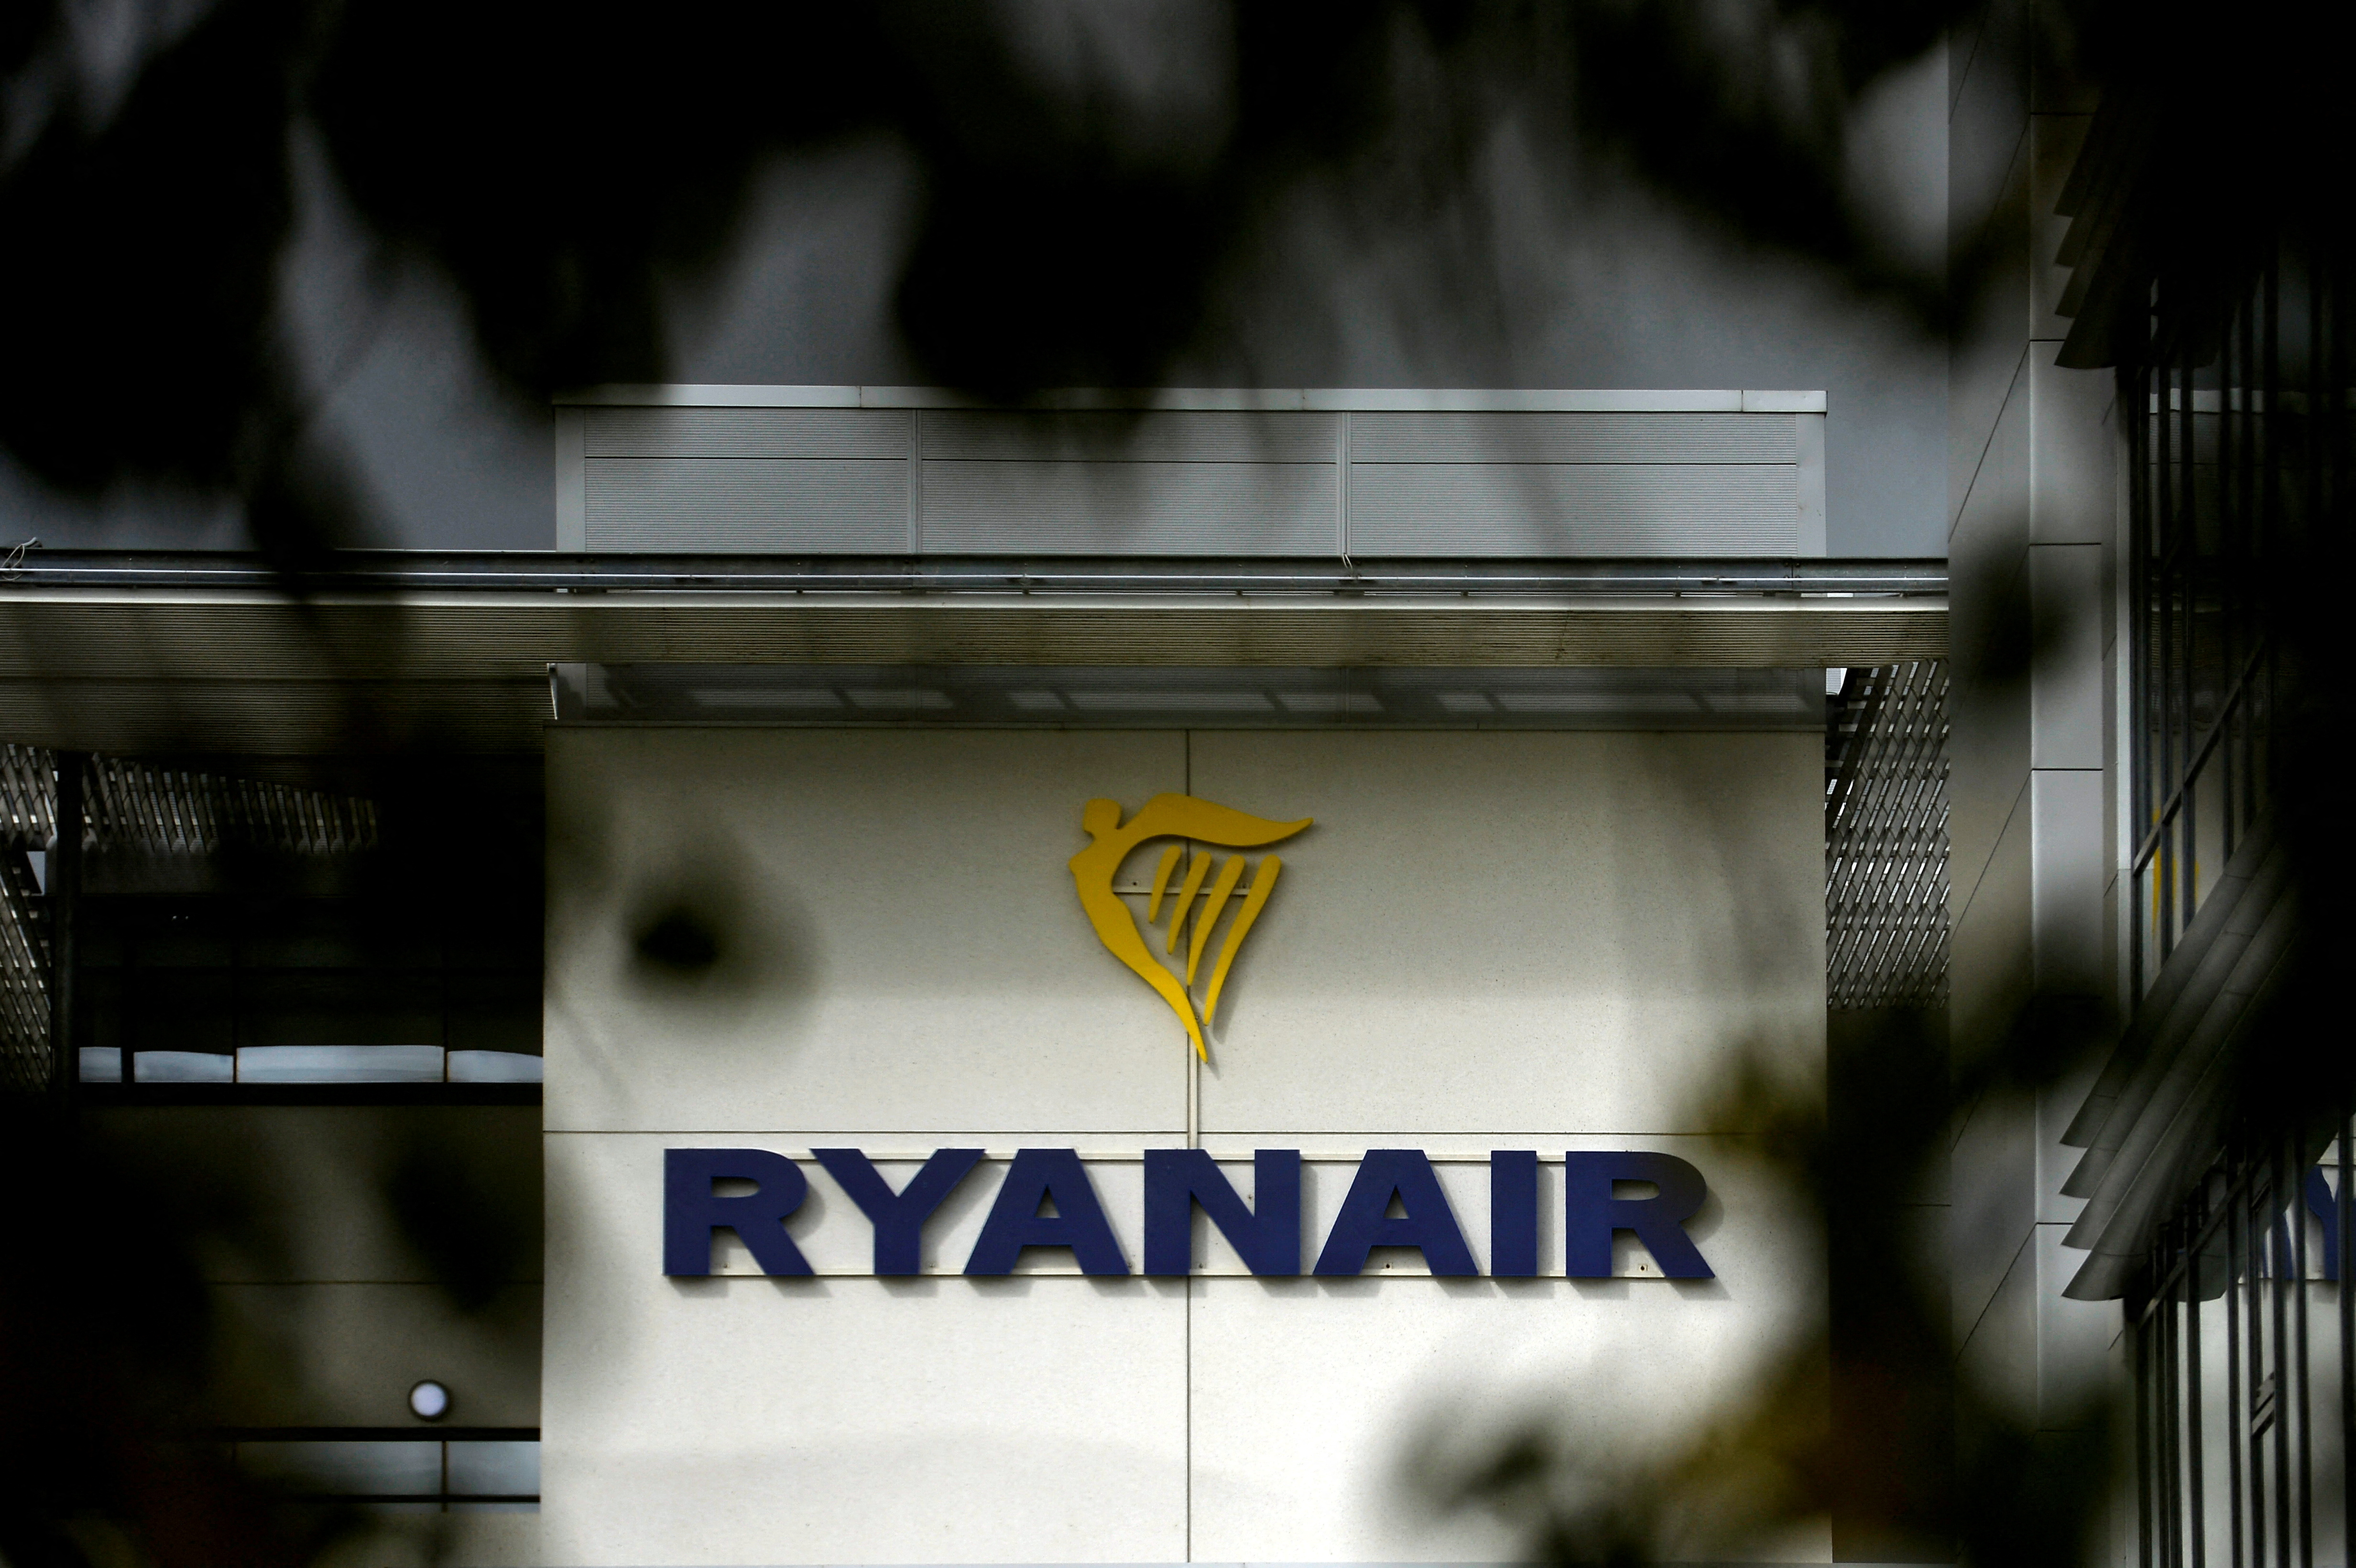 Ryanair in Dublin